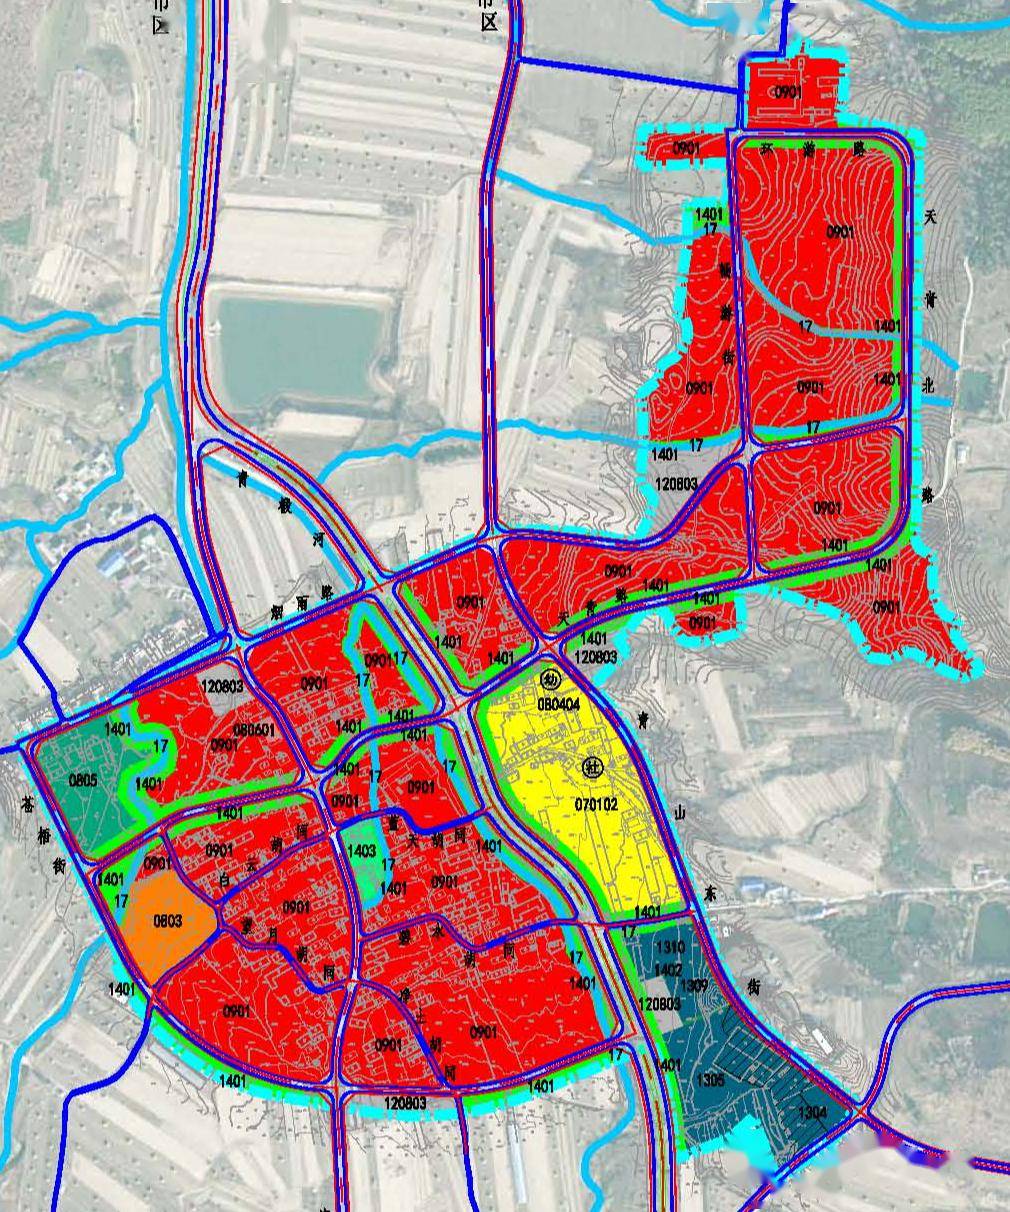 吉林市东山新城规划图图片